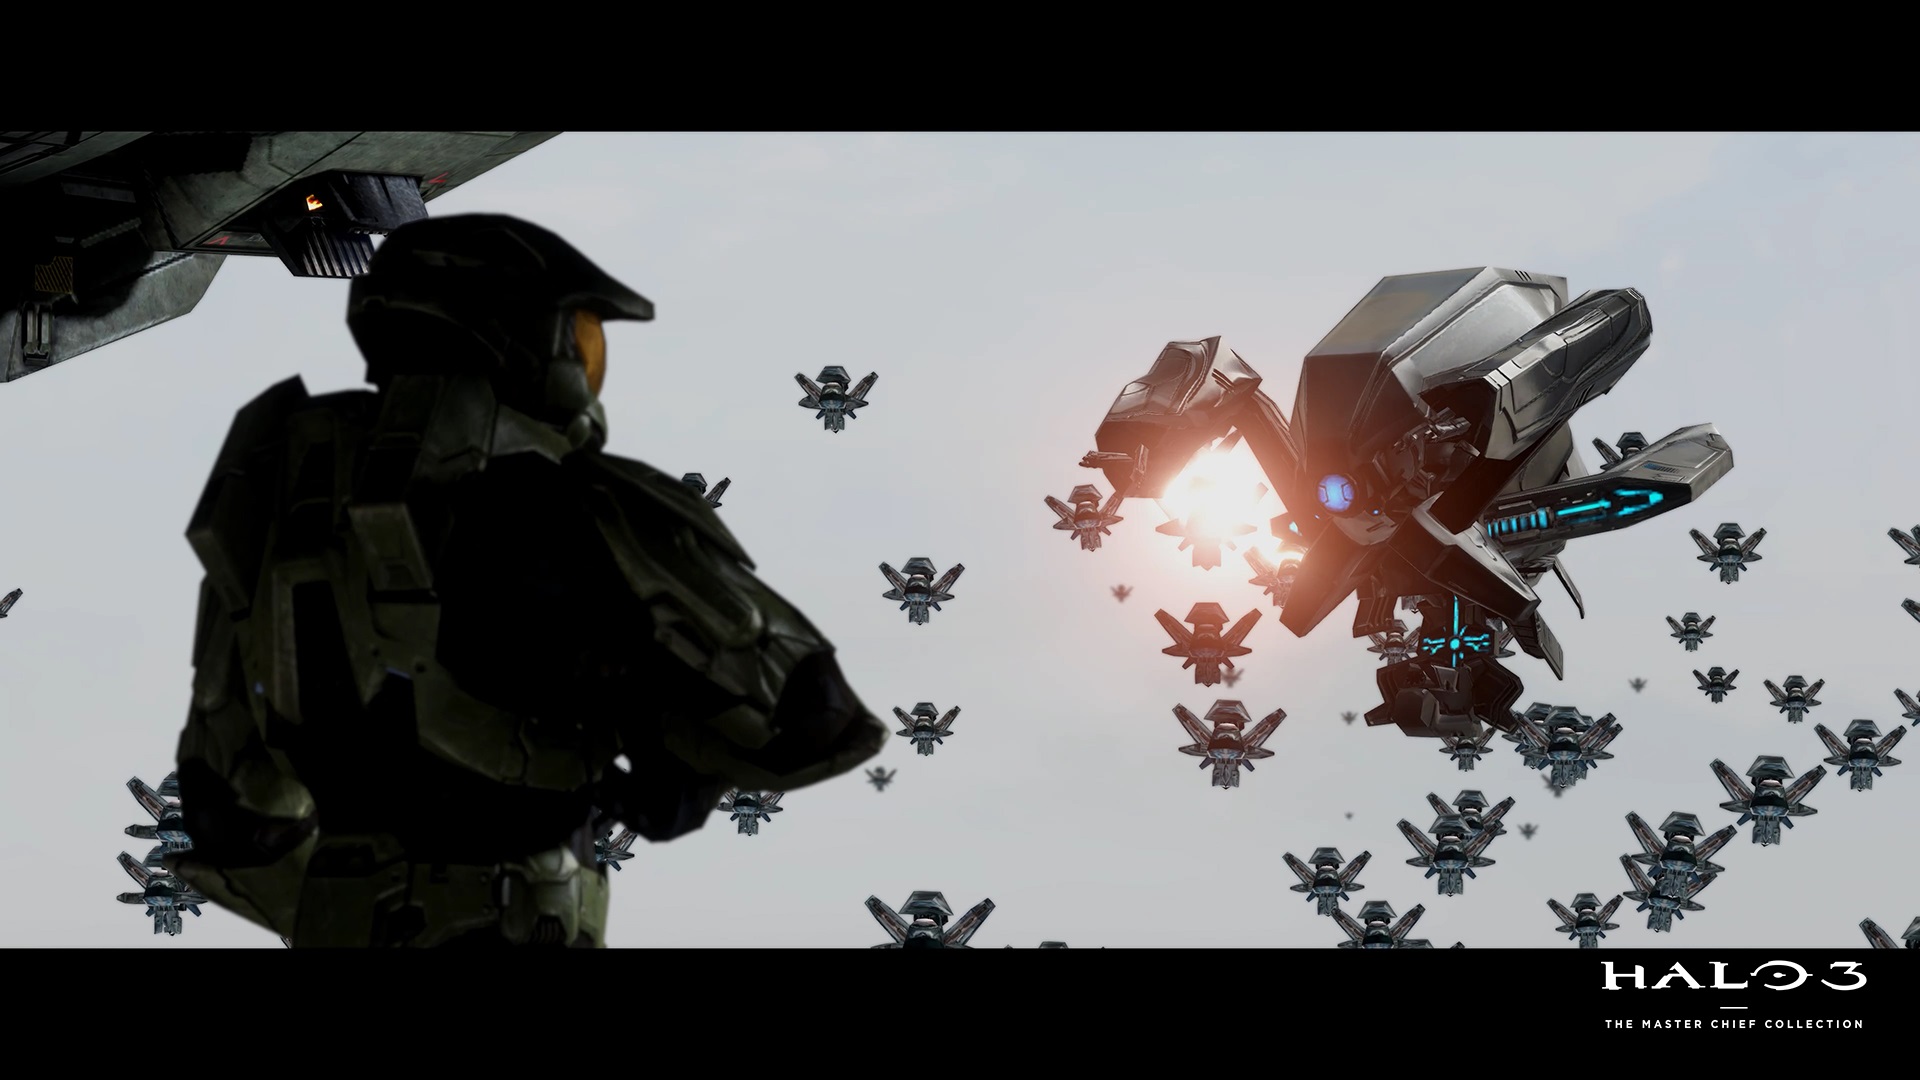 Video For Terminez le combat dans Halo 3, maintenant disponible sur PC dans la Master Chief Collection